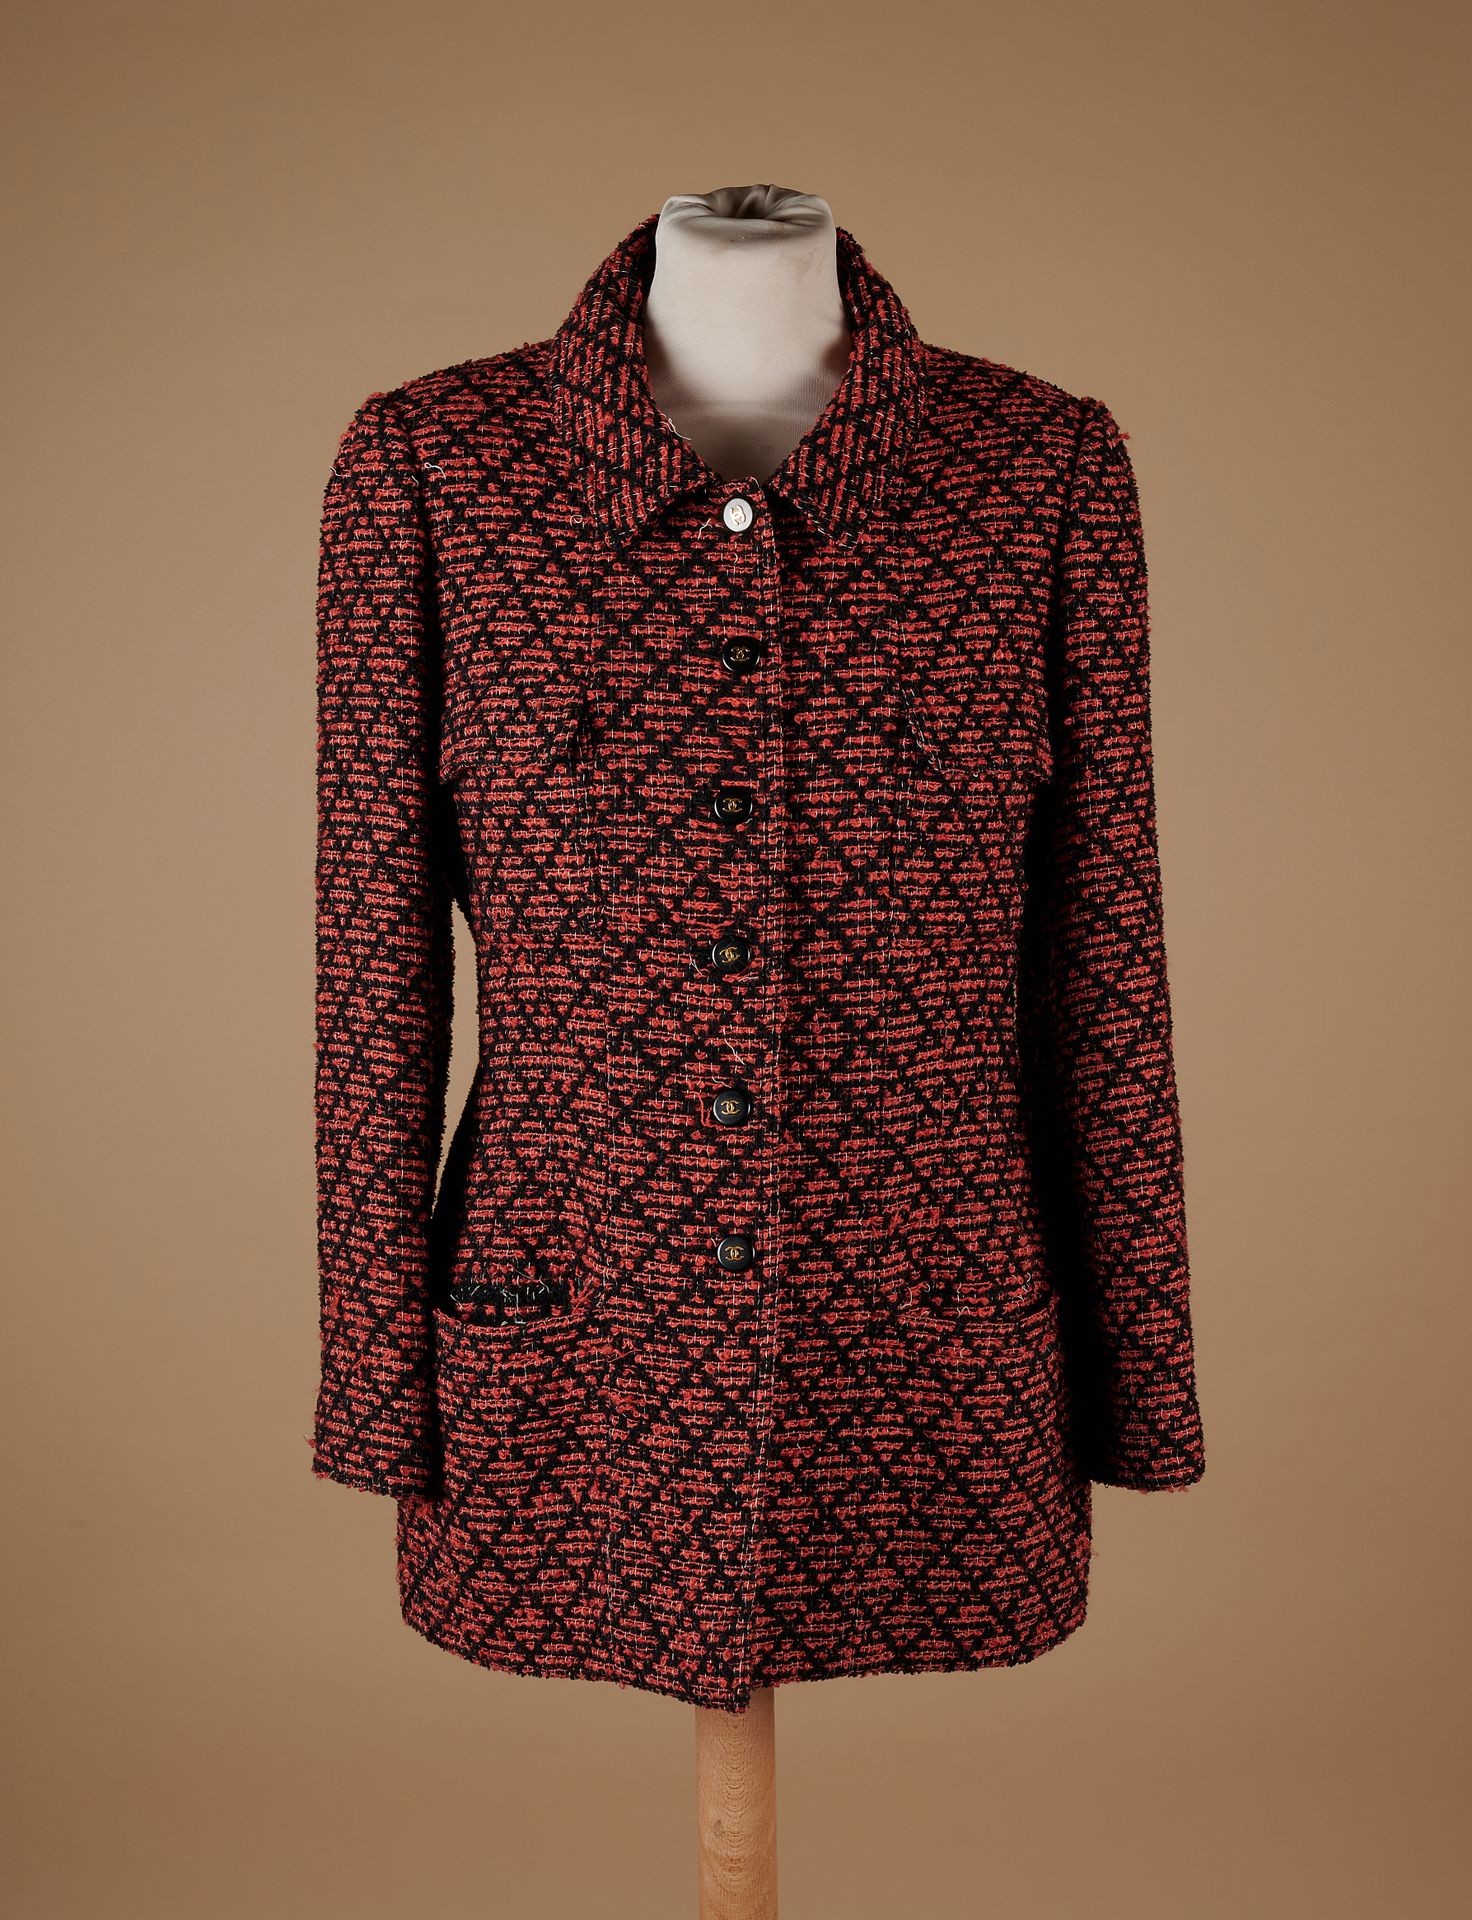 Null 香奈儿精品店(1995年秋冬系列) 
羊毛和马海毛混纺外套，具有红色和黑色的格子图案，单排扣，四个翻盖口袋（古董S42，小号）（多处拉线）。